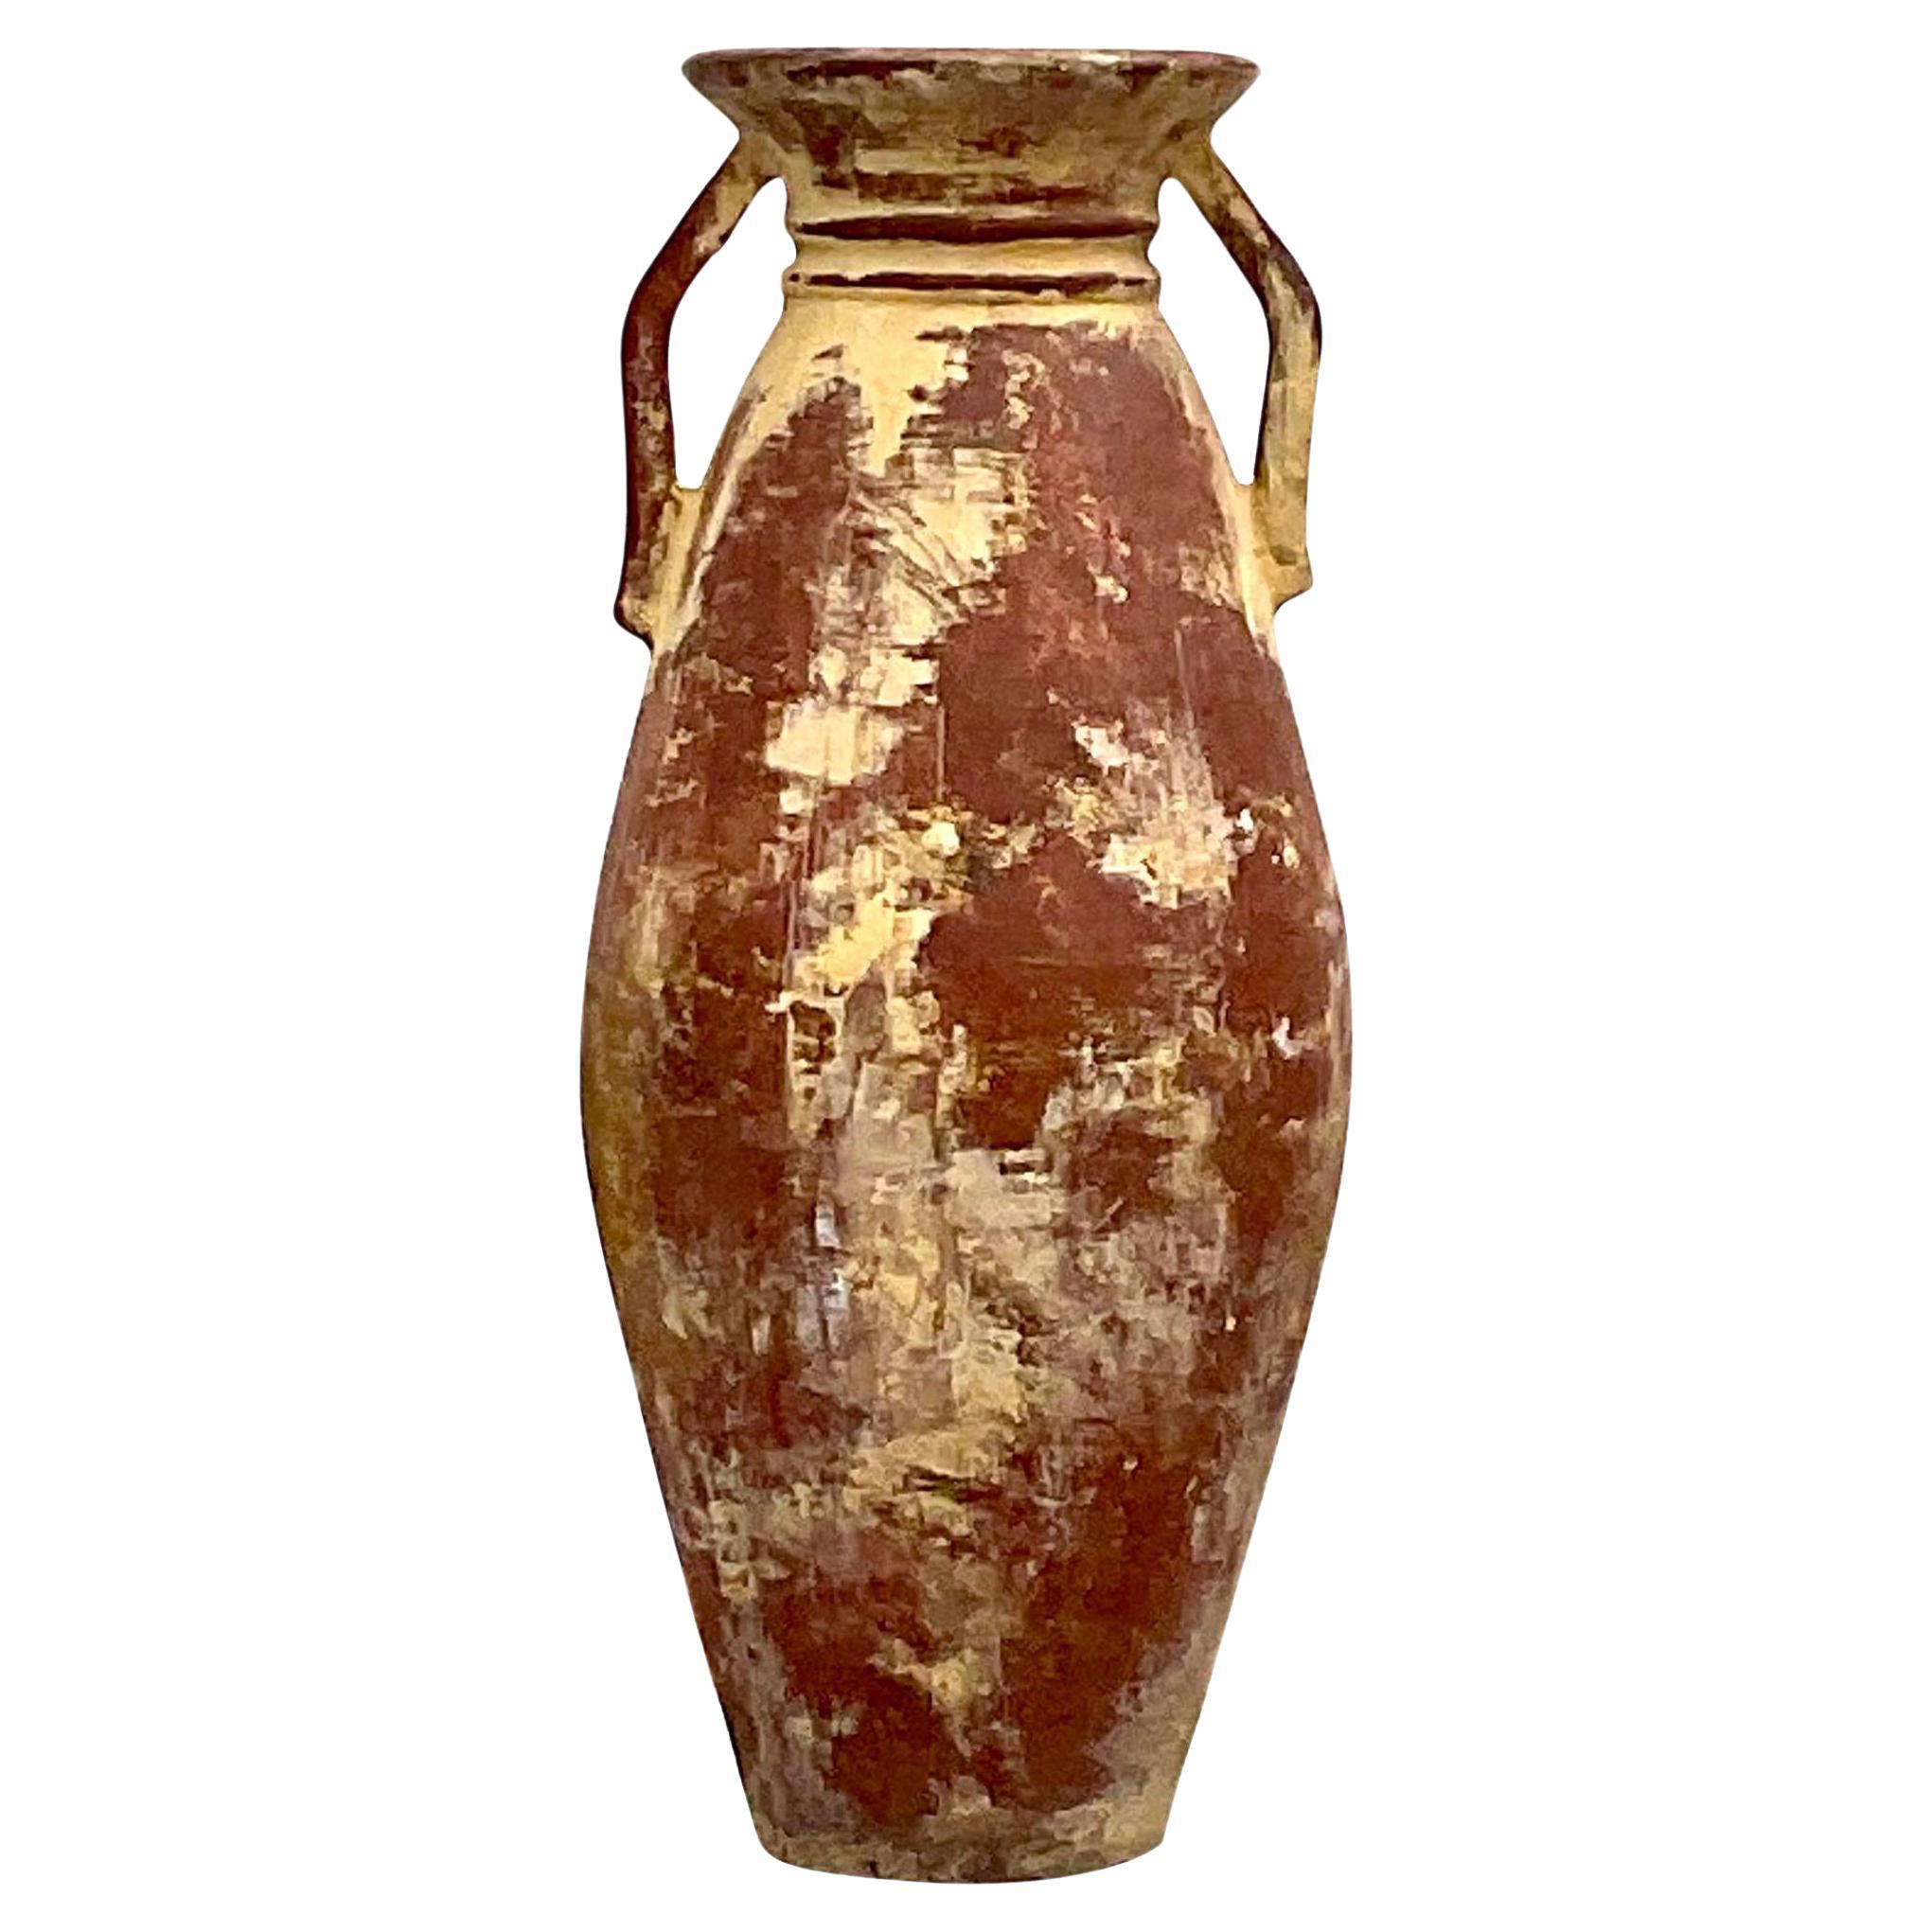 Fantastique urne vintage en terre cuite à l'aspect vieilli et côtier